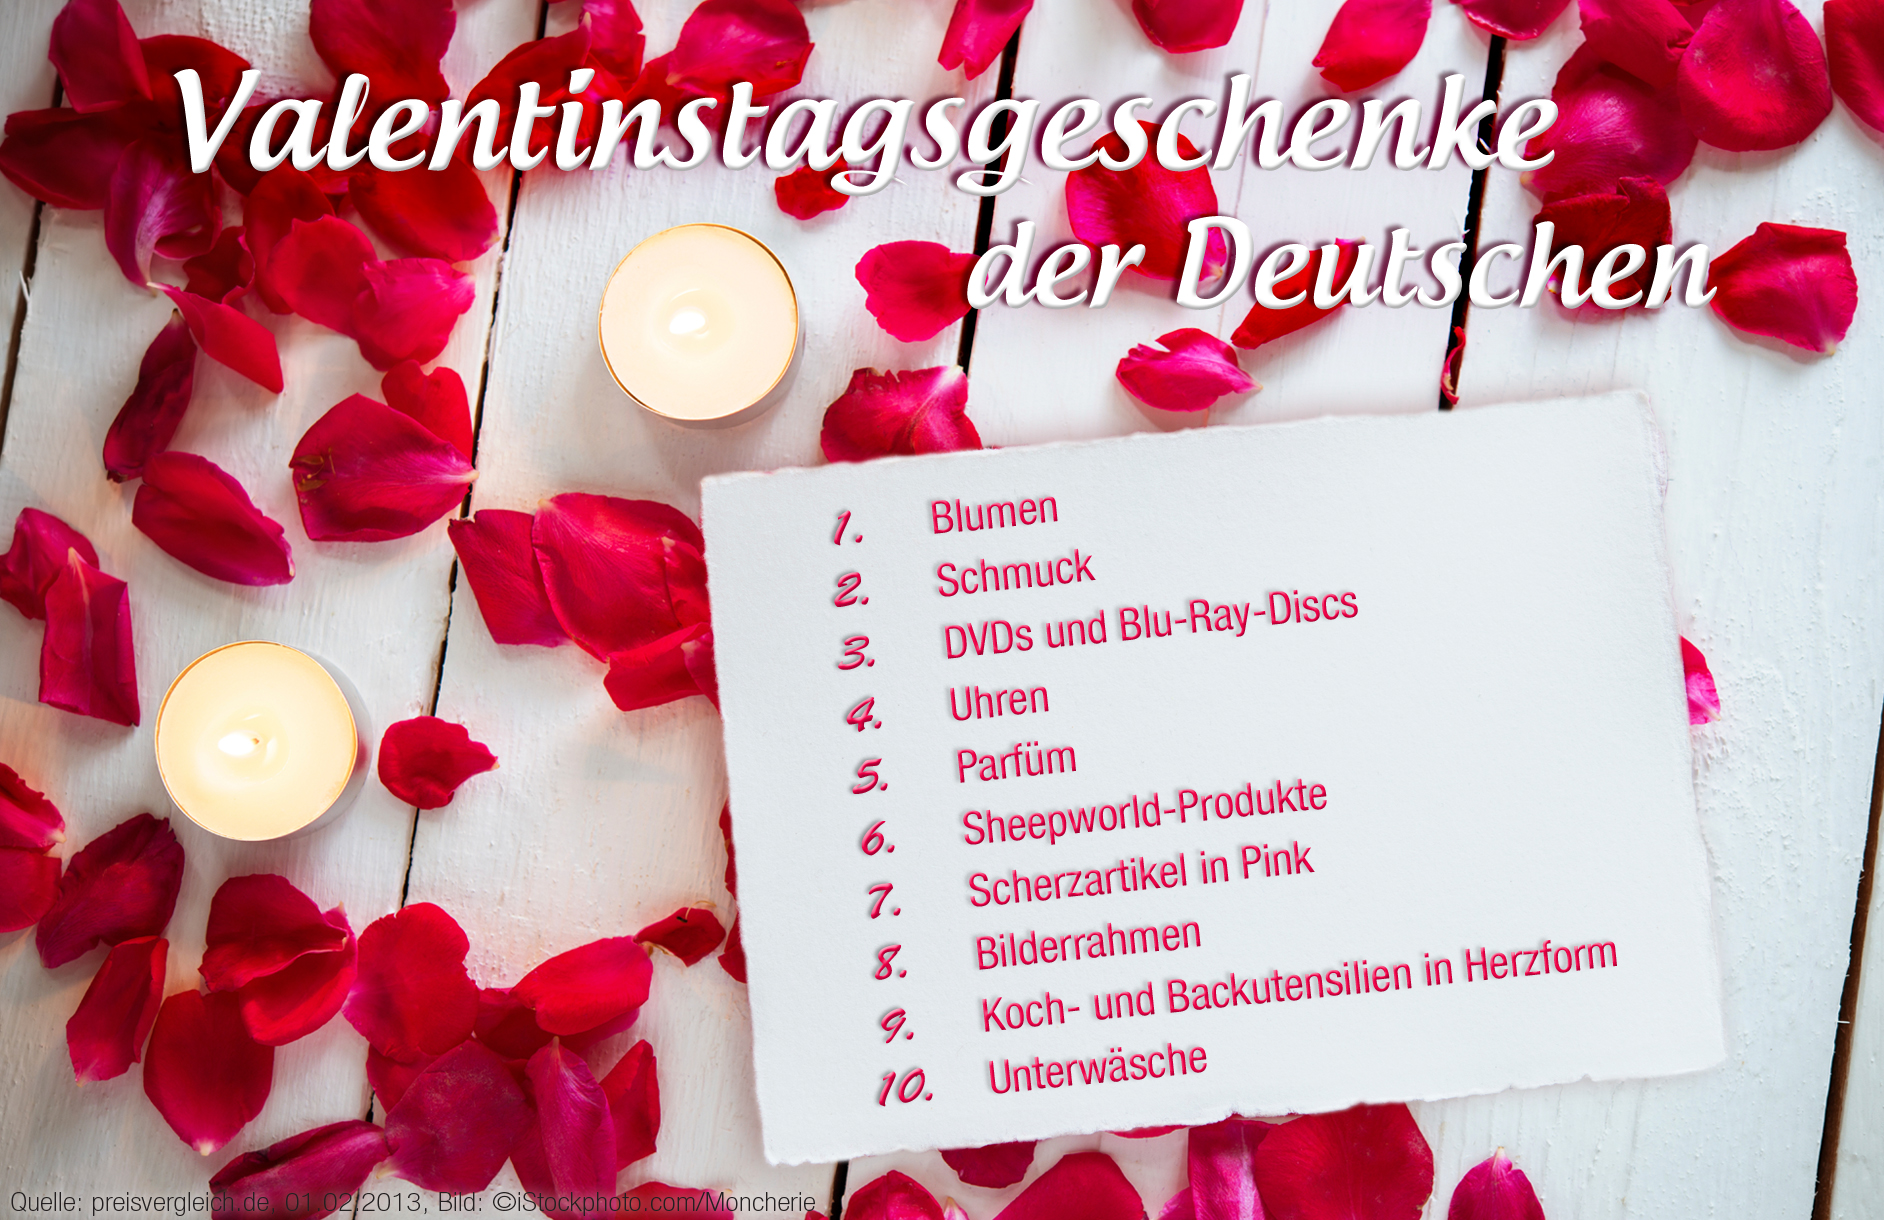 Geschenke Zum Valentinstag Was Sind Die Top 10 Der Deutschen Preisvergleich De Ag Pressemitteilung Lifepr